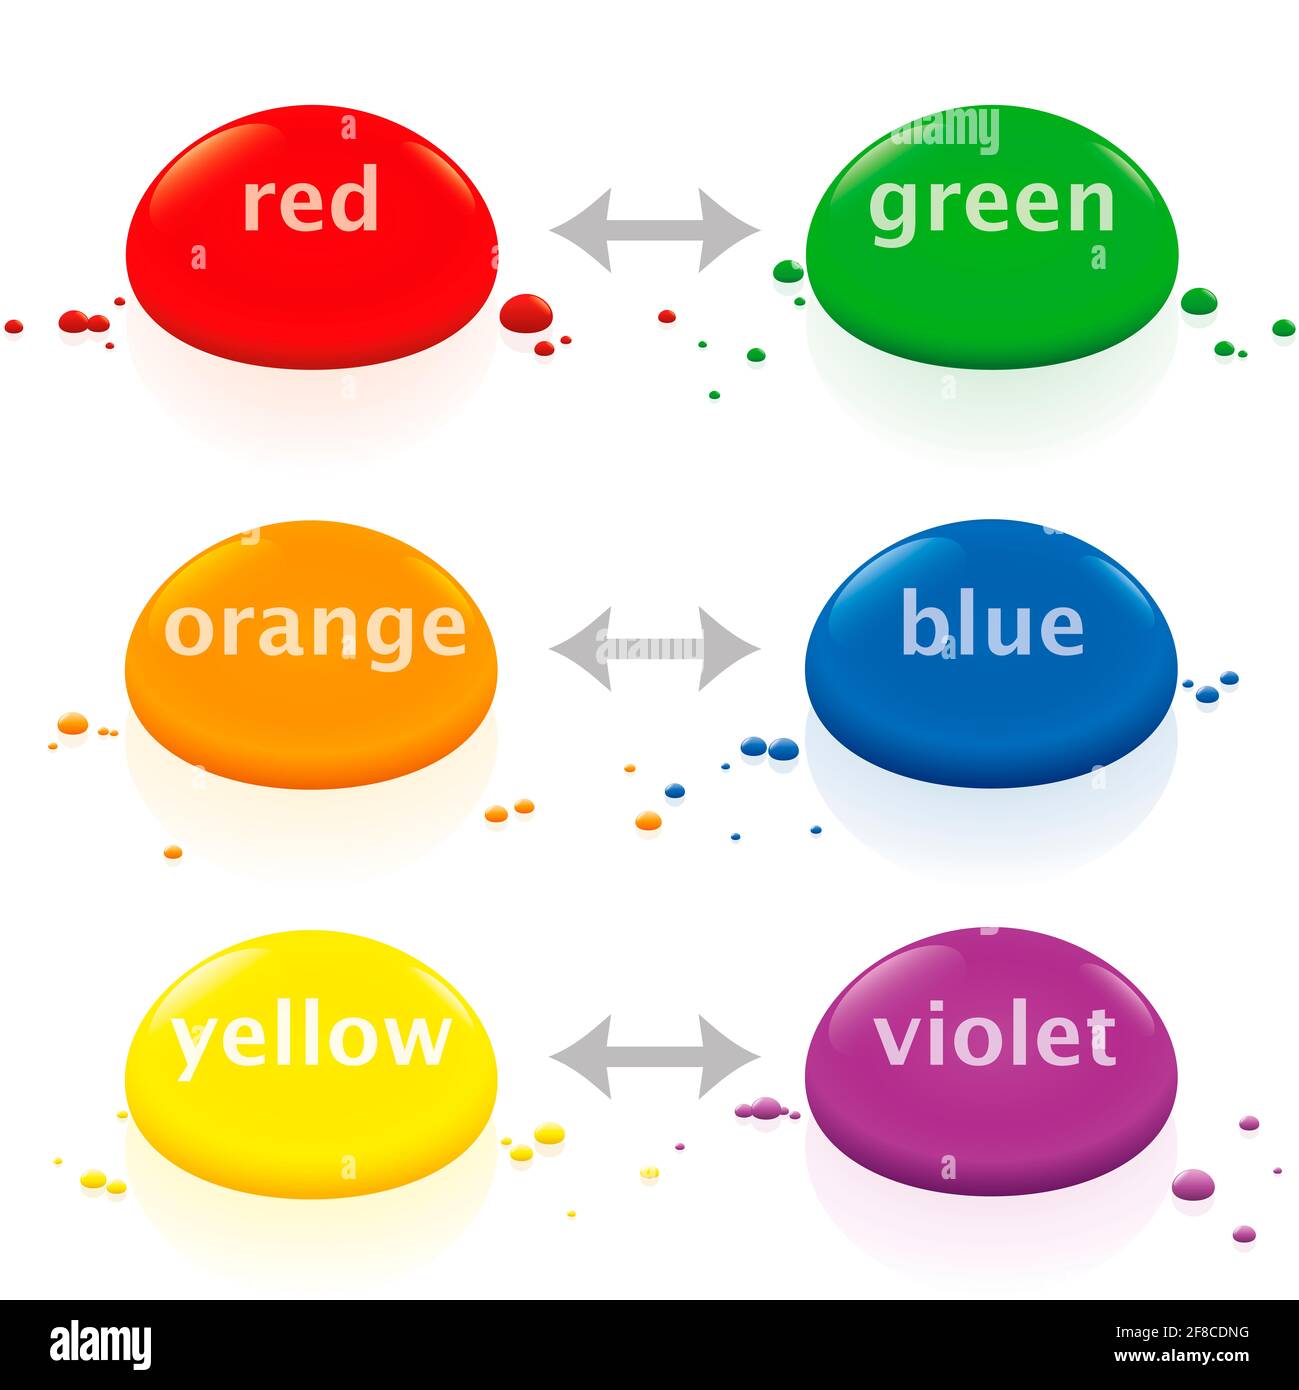 Colori complementari, teoria dei colori, verde rosso, blu arancio, viola giallo, gocce colorate opposte - illustrazione su sfondo bianco. Foto Stock